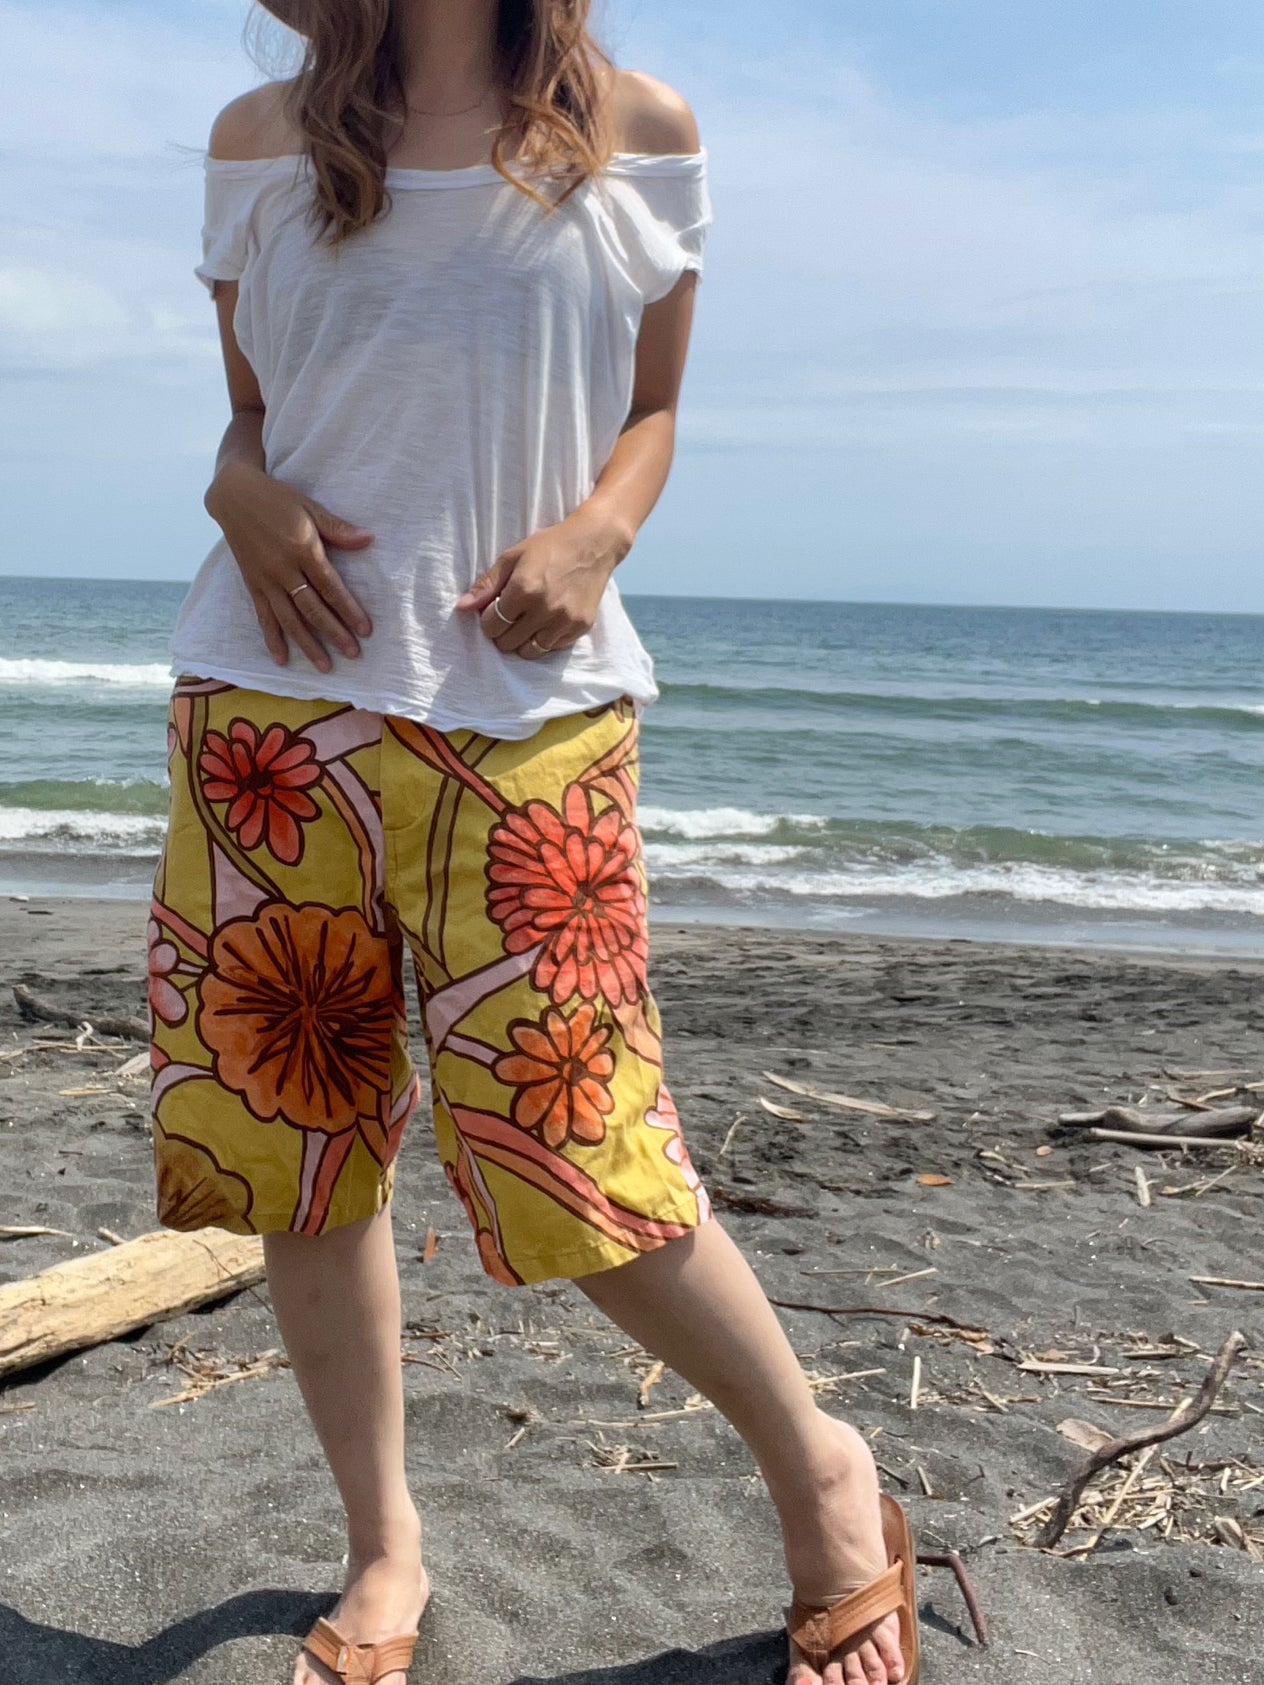 【JAMS WORLD】surf line USED  short pants Made in Hawaii  ジャムス メンズ 水着 ロングハーフパンツ ボードショーツ (Mサイズ）